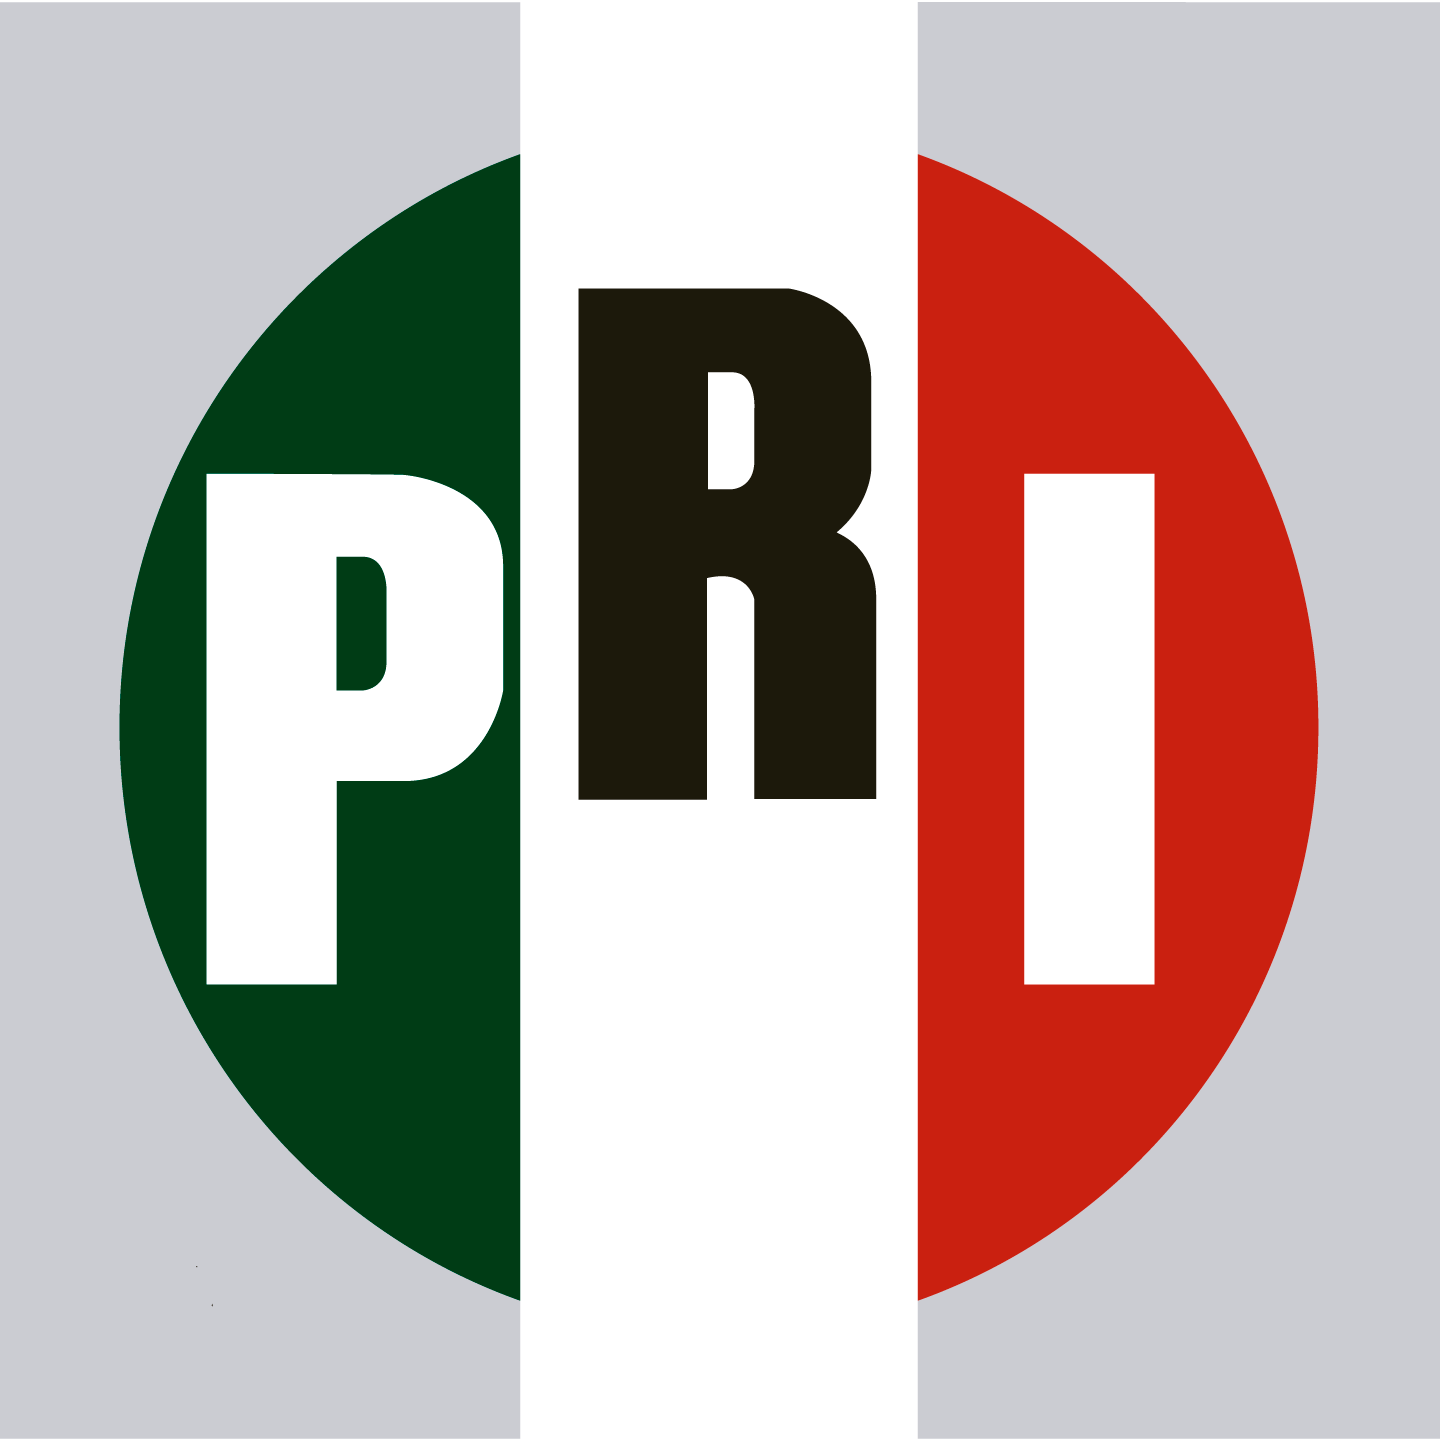 Confirma Tribunal Electoral calumnia de Morena contra el PRI